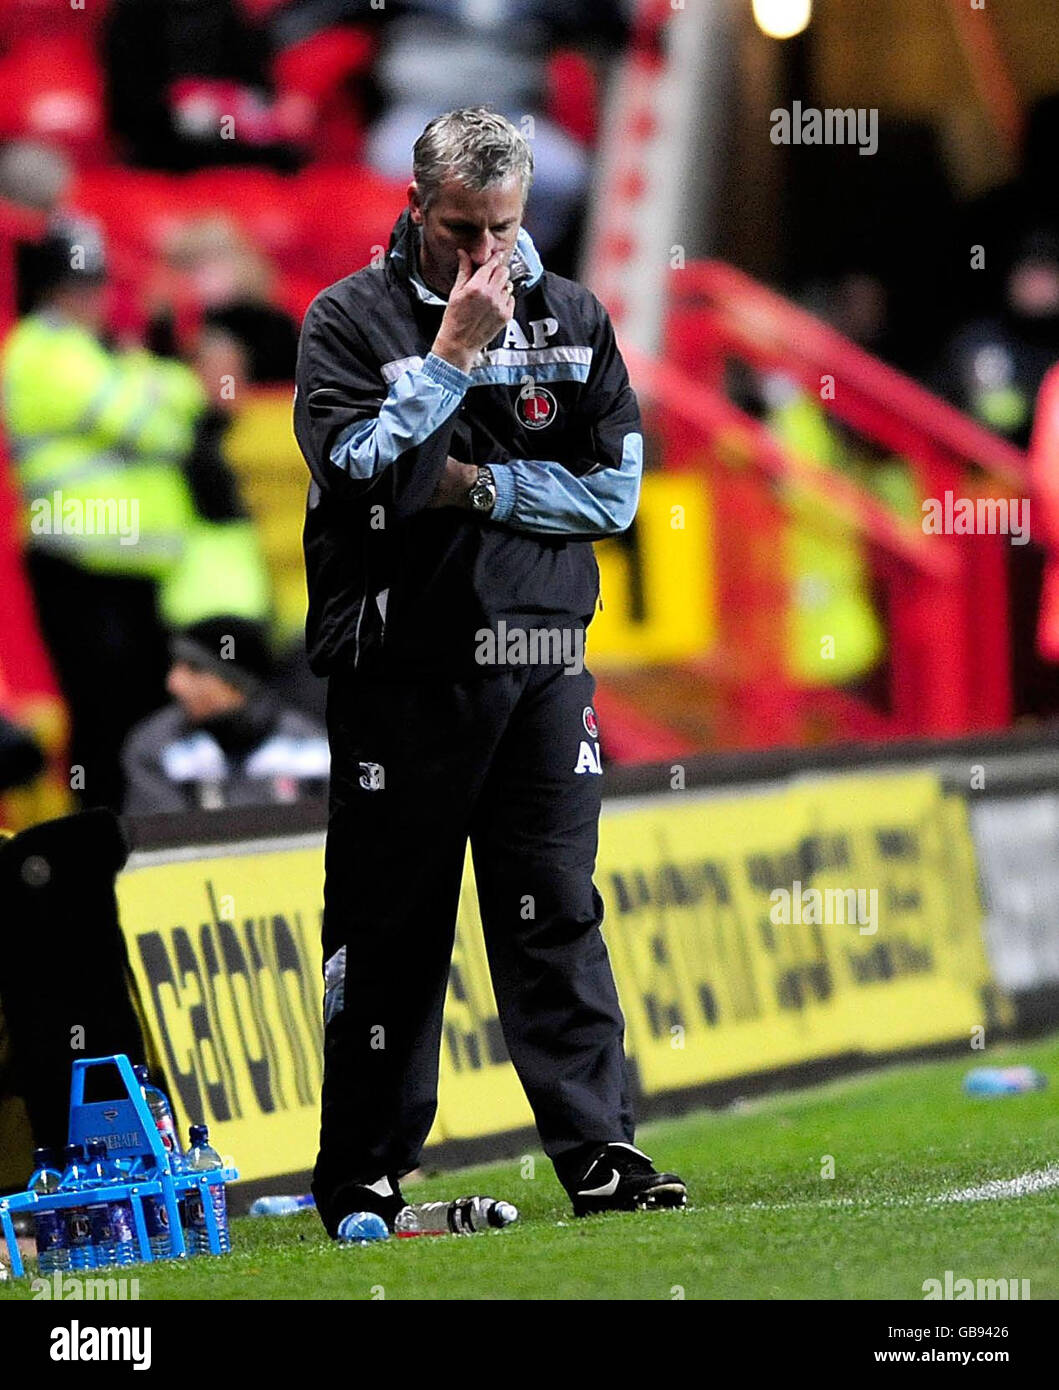 Alan Pardew, le Manager de Charlton Athletic, montre la déjection alors que ses côtés sont battus lors du match du championnat de football Coca-Cola à la Valley, Londres. Banque D'Images